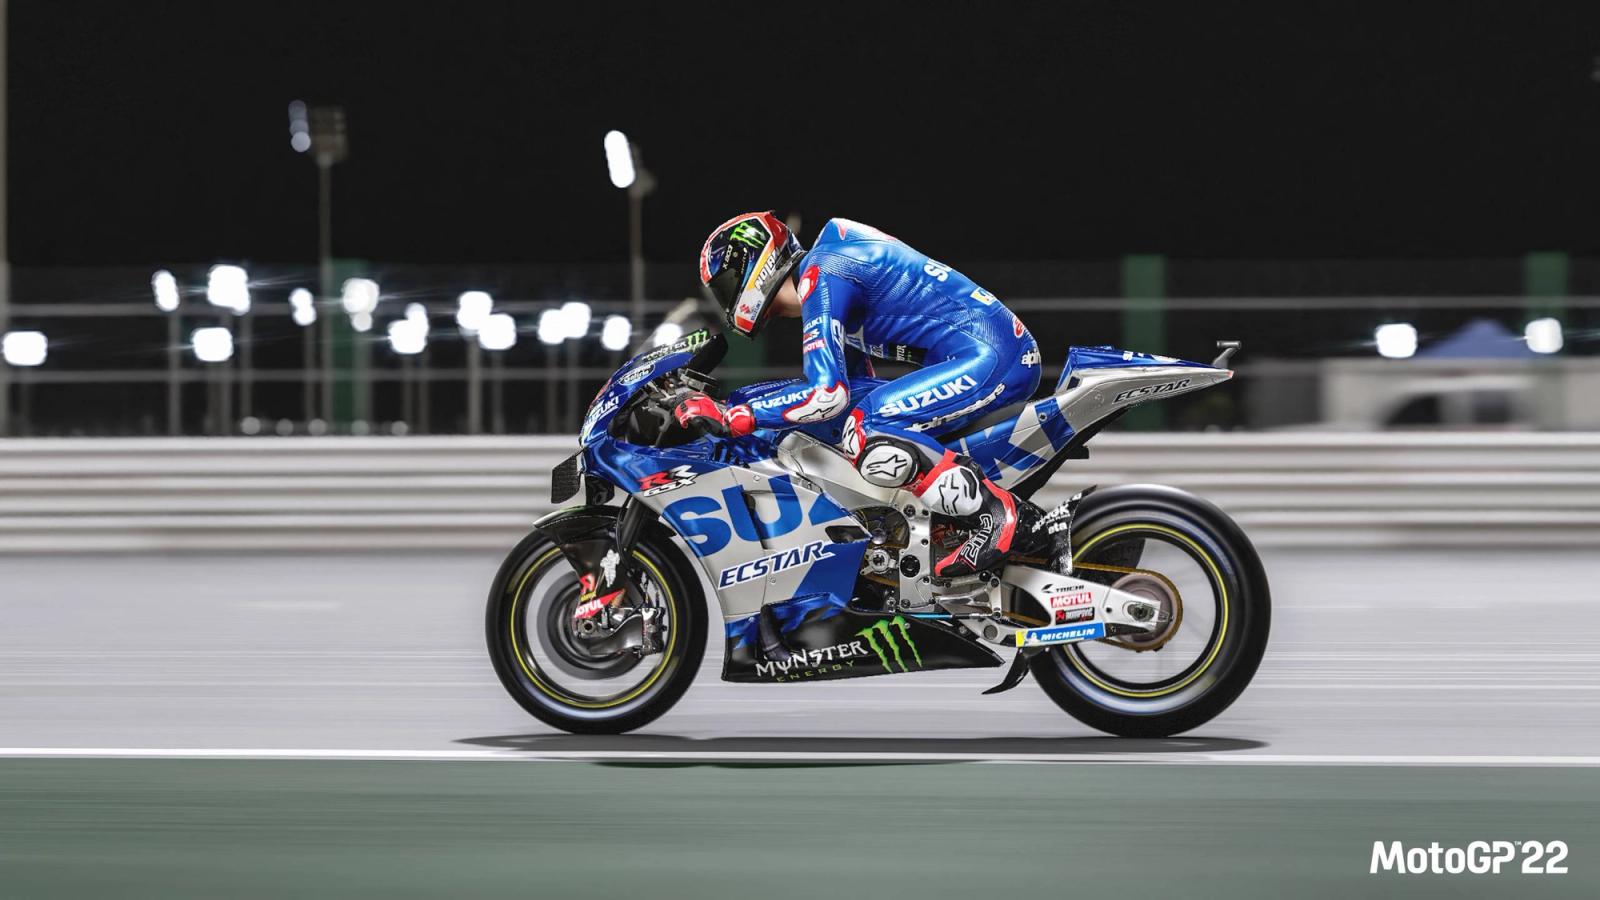 MotoGP 21 release date